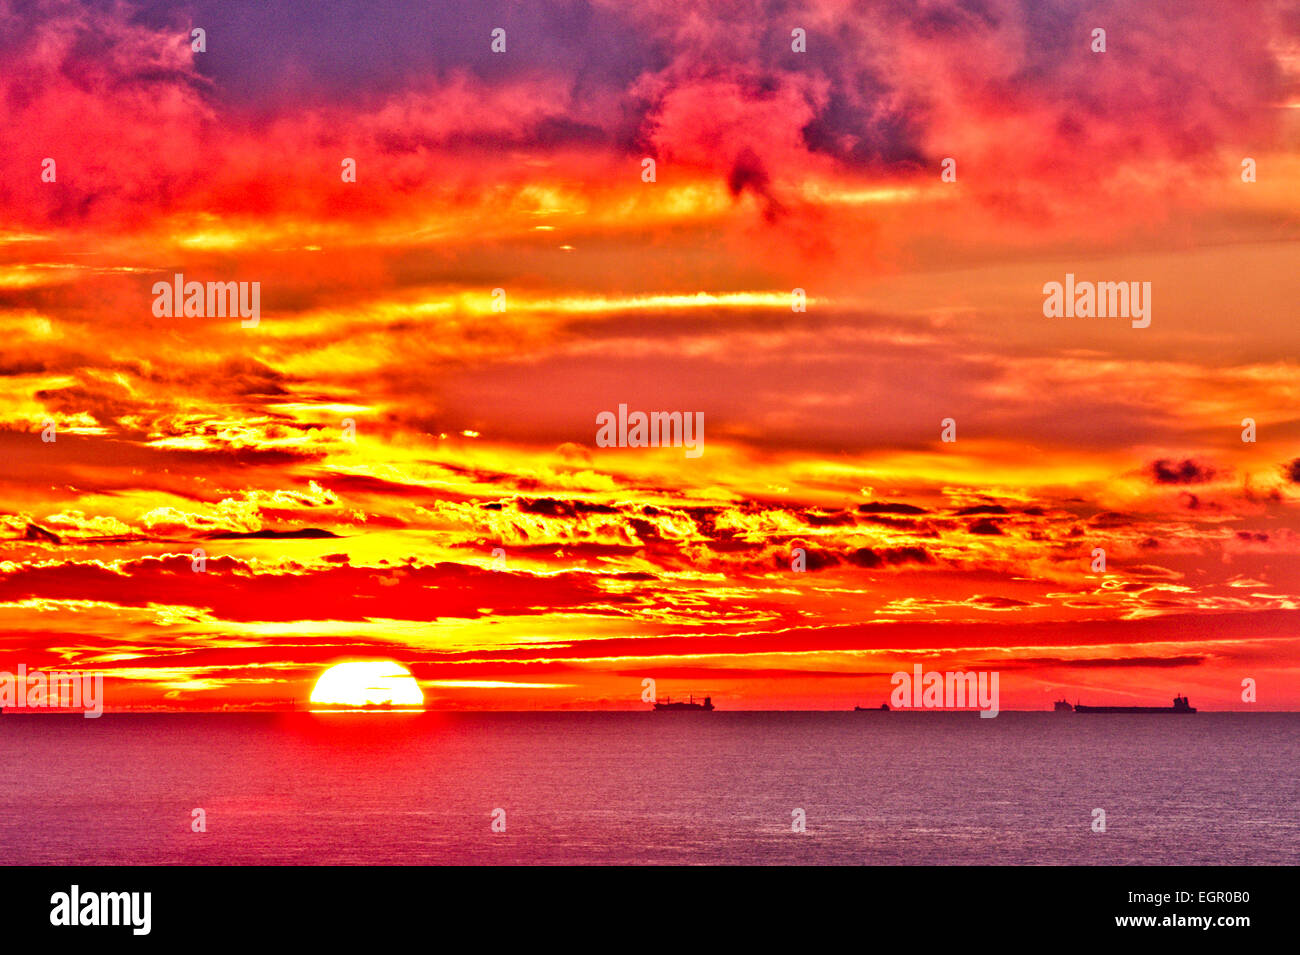 El Canal Inglés visto desde dover con el amanecer en un espectacular cielo rojo y amarillo sobre Calais y la costa francesa. Petroleros navegando en el horizonte. Foto de stock